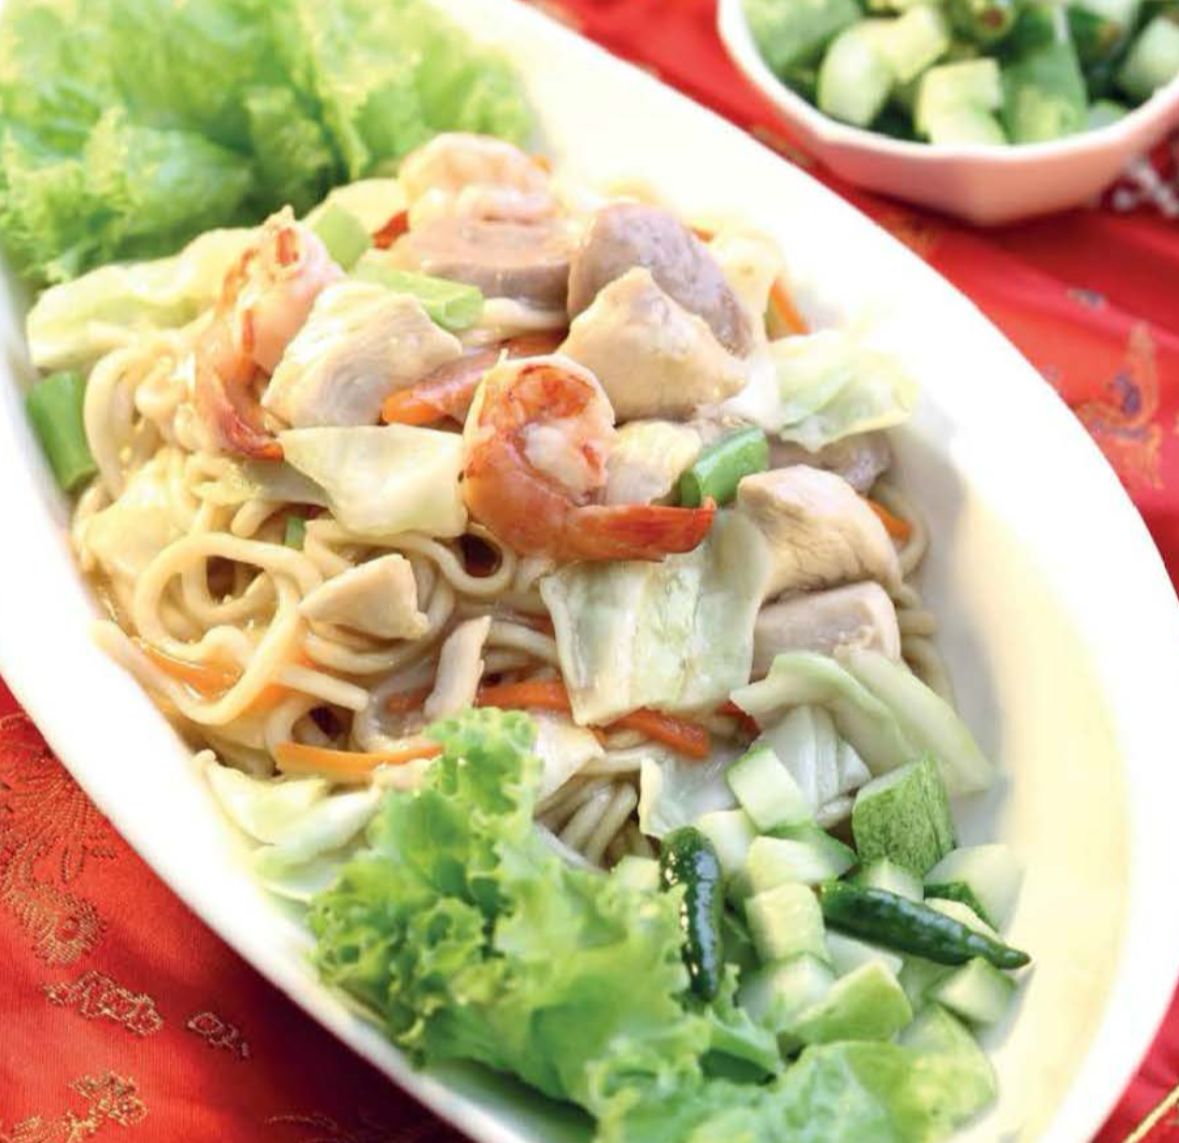 Resep Lo Mi ala Restoran Chinese Food untuk Buka Puasa, Cita Rasa Manis dan Gurih Menjadi Satu